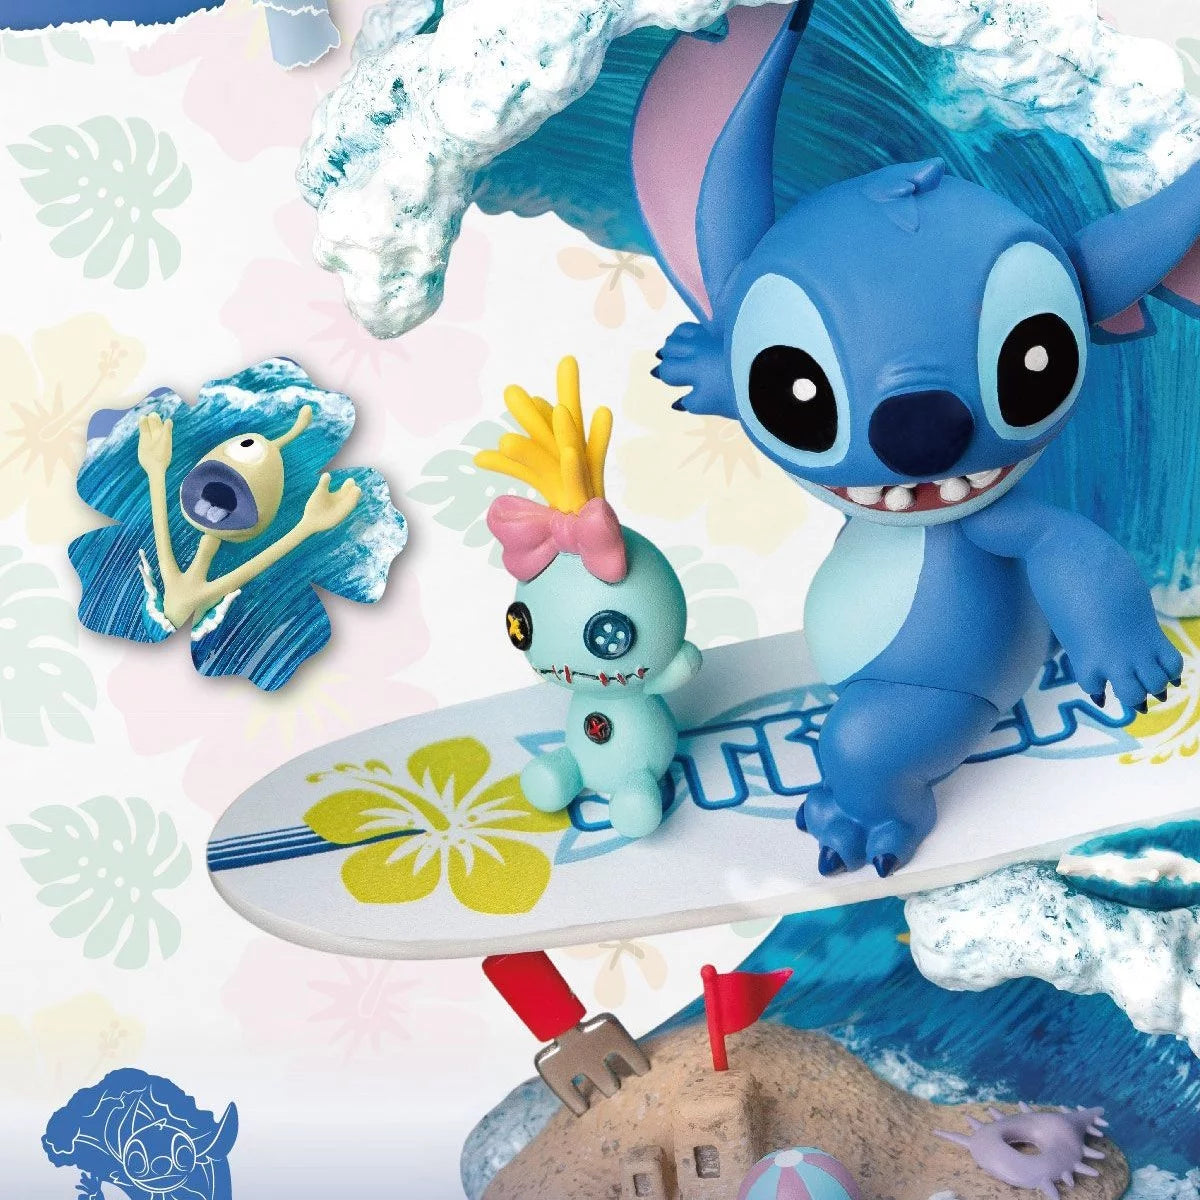 Figurine Disney - Stitch Surf Summer Series D-Stage